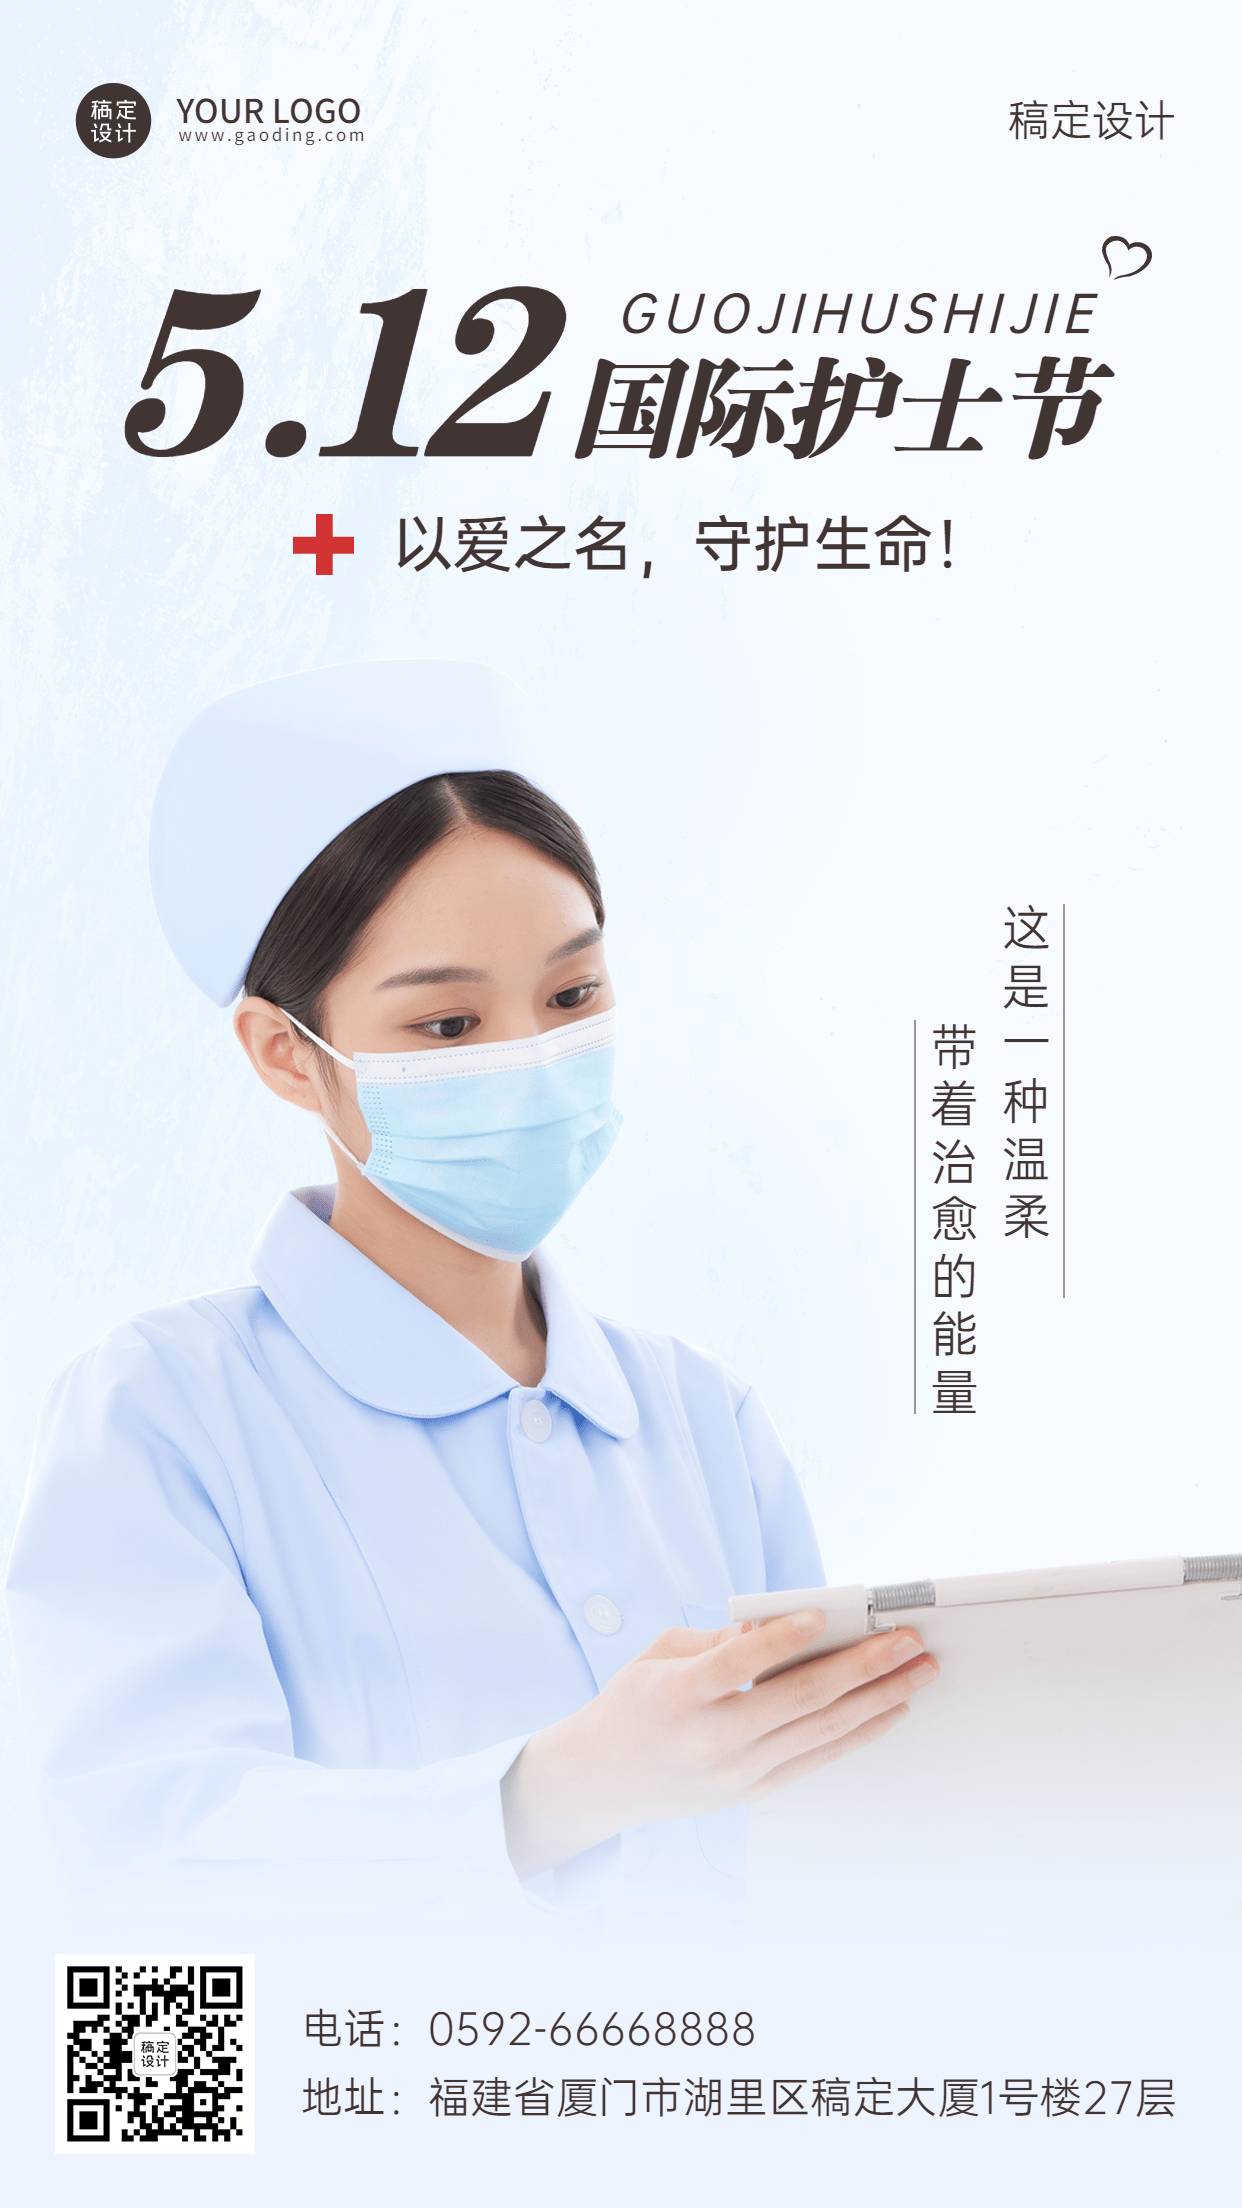 国际护士节节日宣传手机海报预览效果